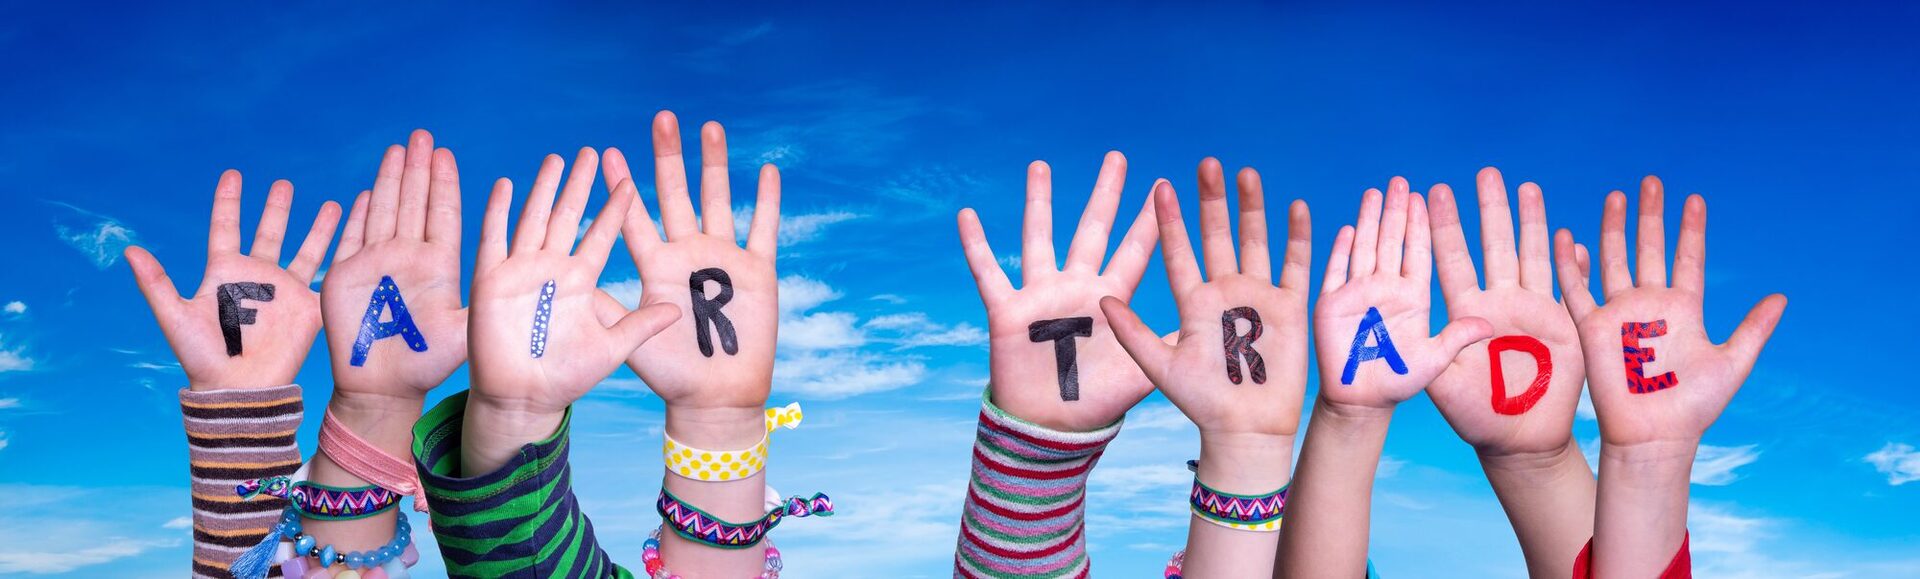 Fair Trade-Schriftzug auf Kinderhänden